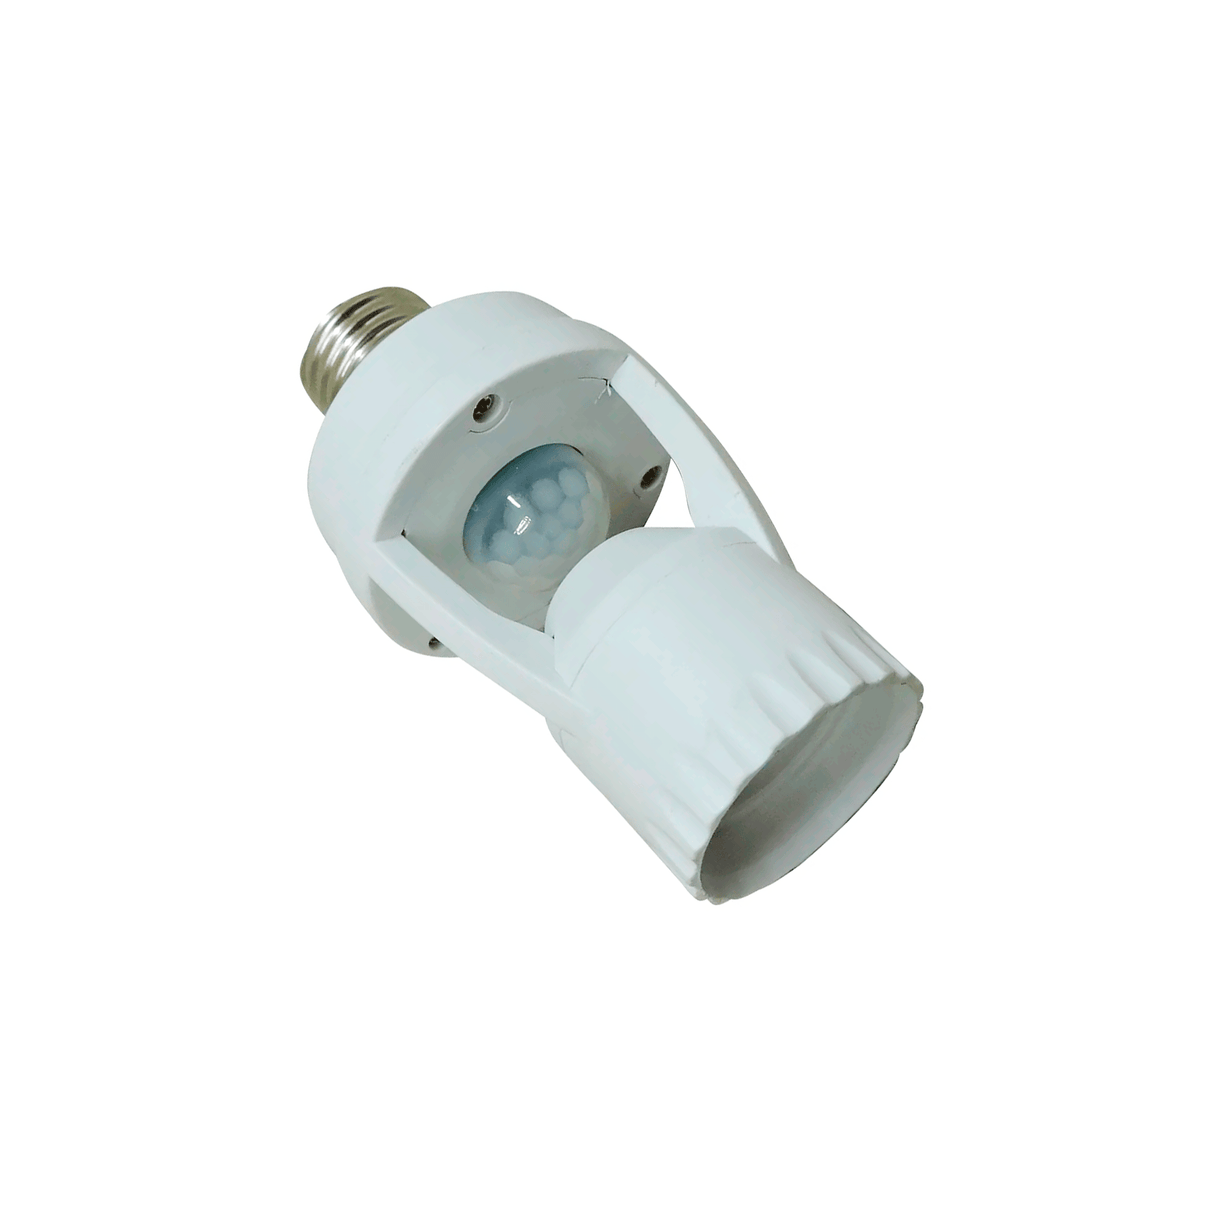 Socket con Sensor de Movimiento Adir 2521 p/ Foco Ahorrador